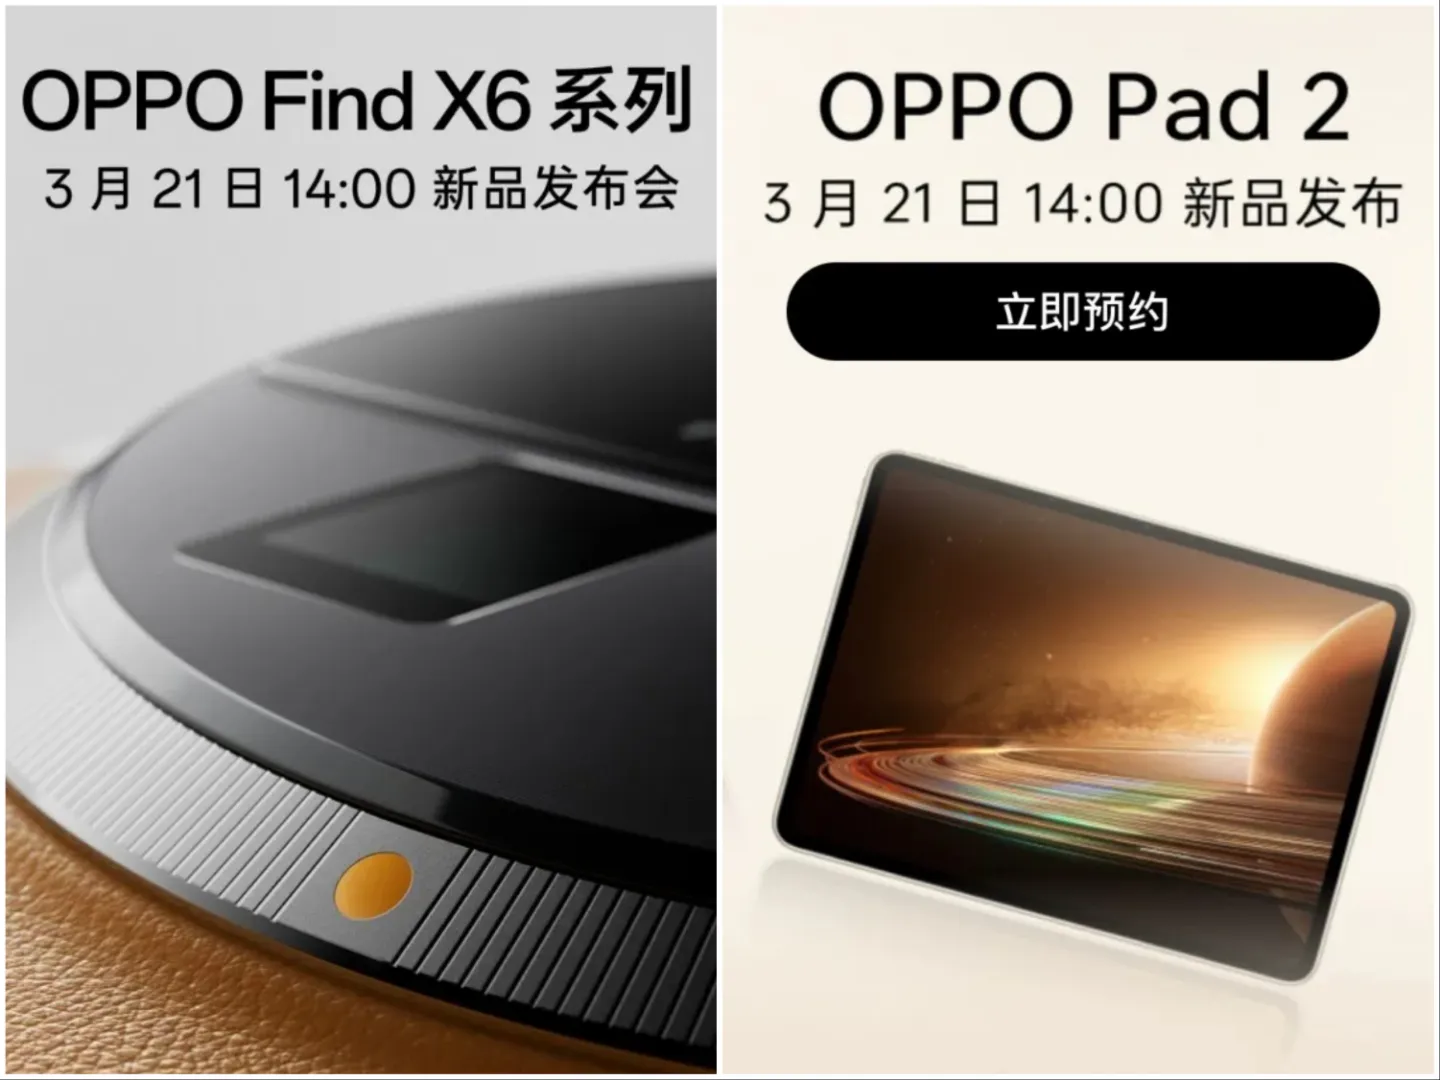 OPPO Find X6 và máy tính bảng Pad 2 sẽ được ra mắt vào 21/3